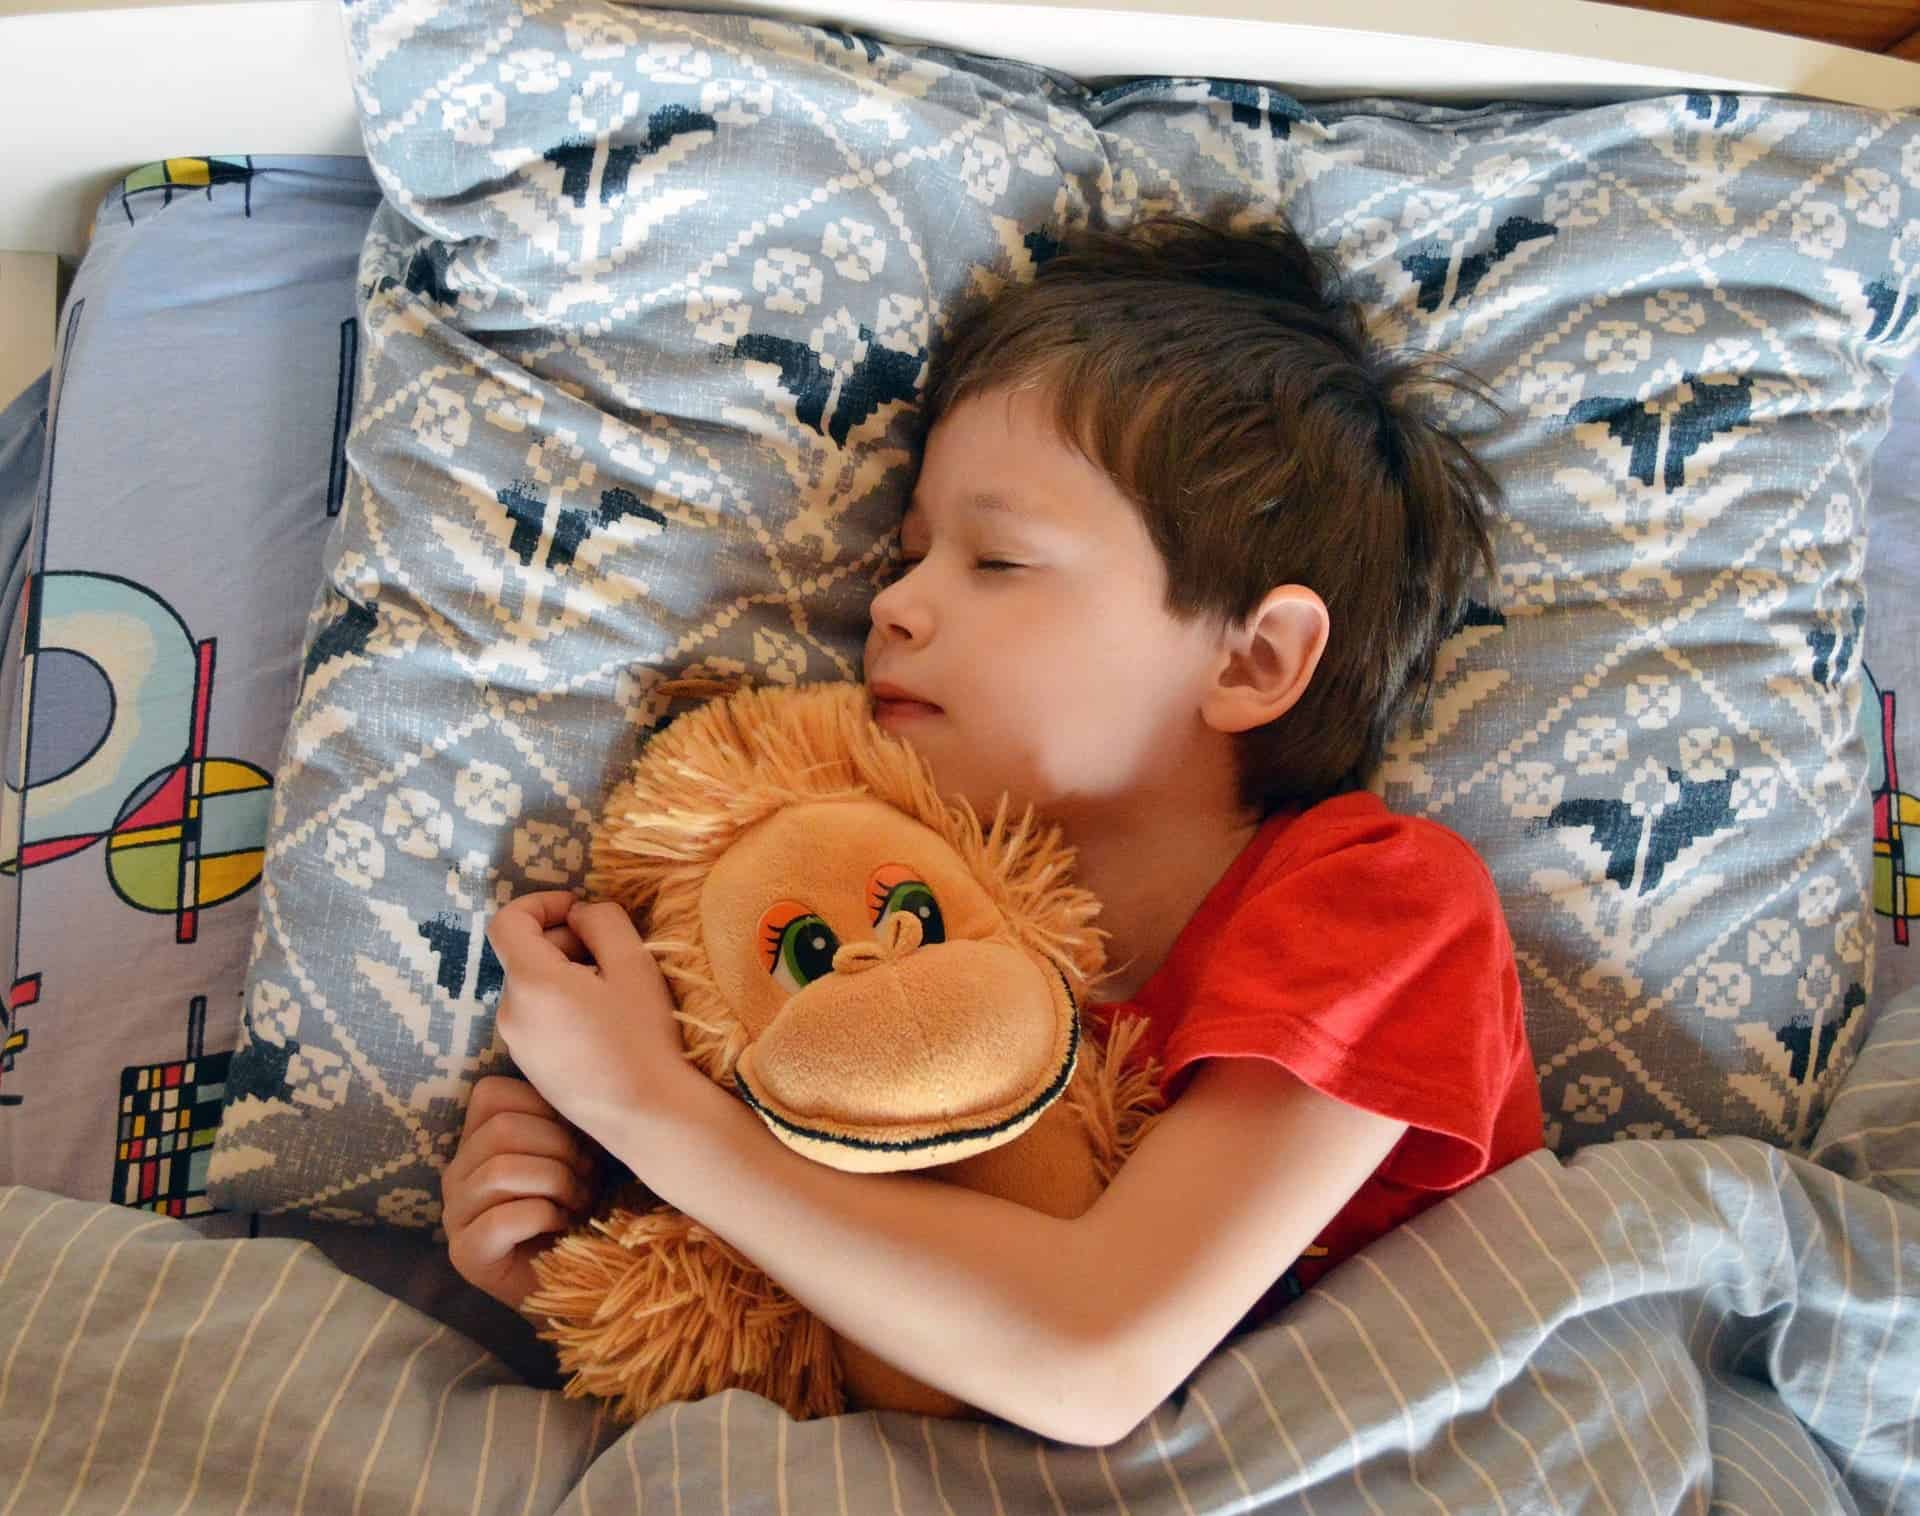 How mindfulness training can help vulnerable children sleep better